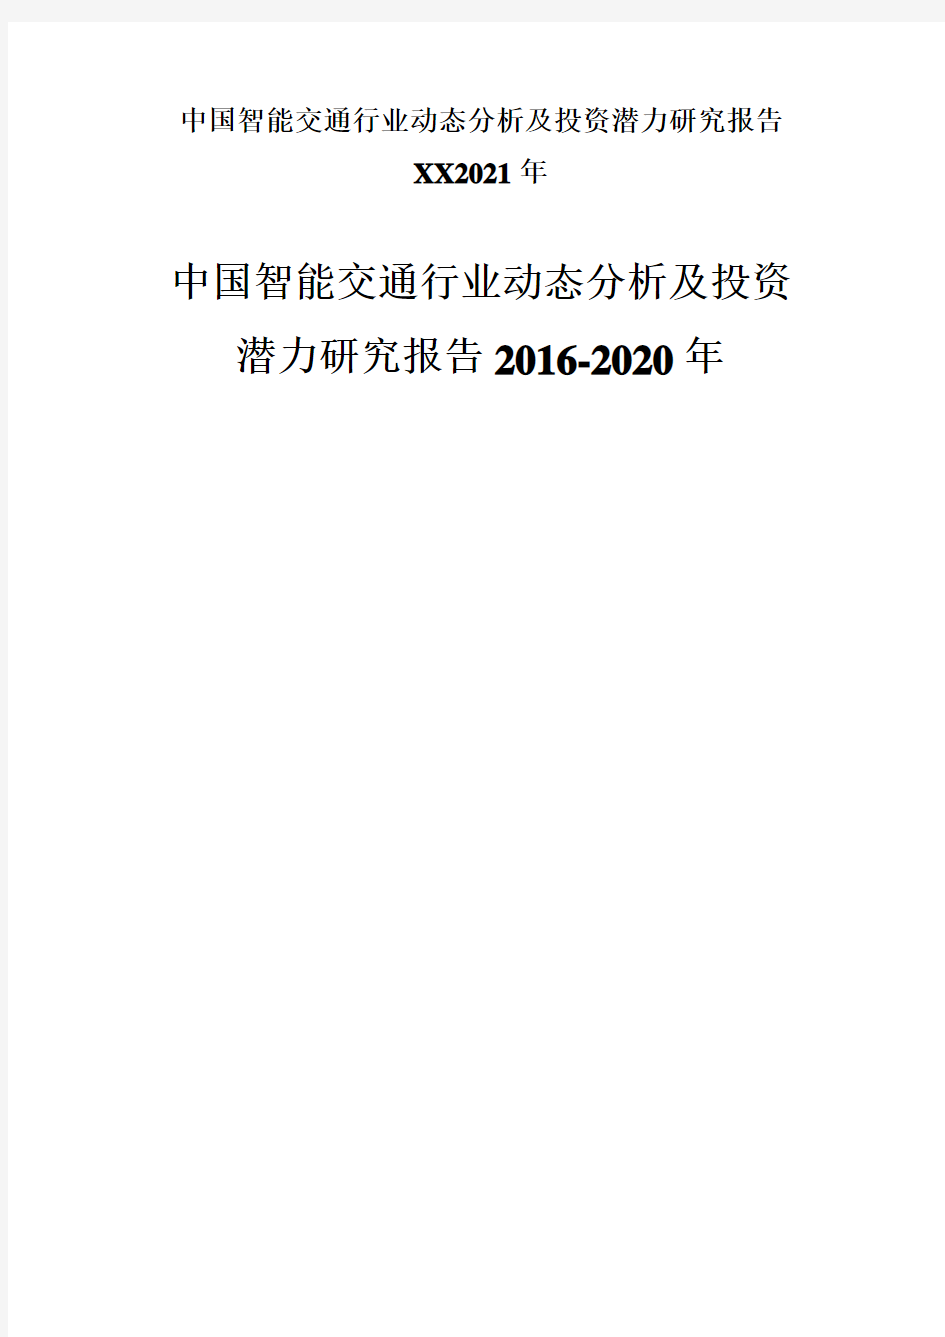 中国智能交通行业动态分析及投资潜力研究报告XX2021年